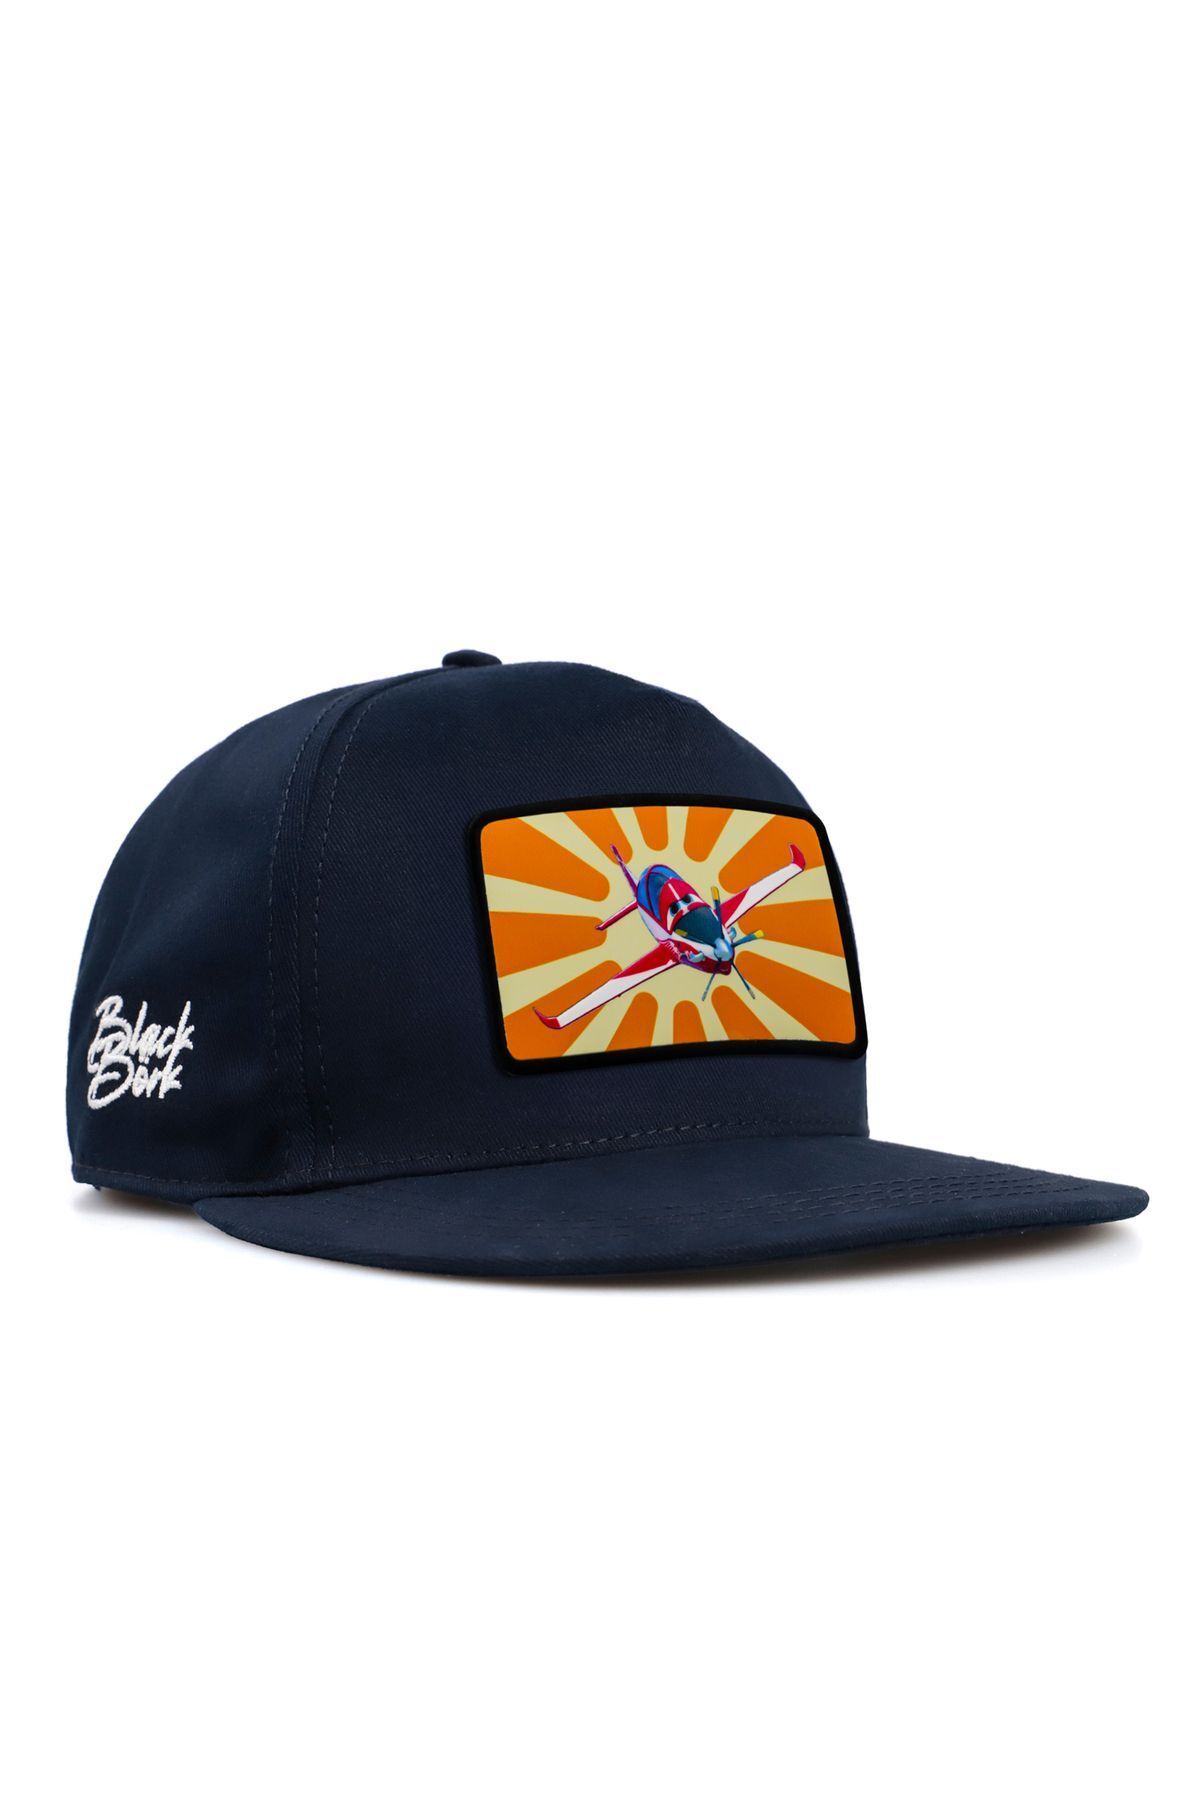 BlackBörk V2 Hip Hop Kids Güneş Hürkuş Lisanlı Lacivert Çocuk Şapka